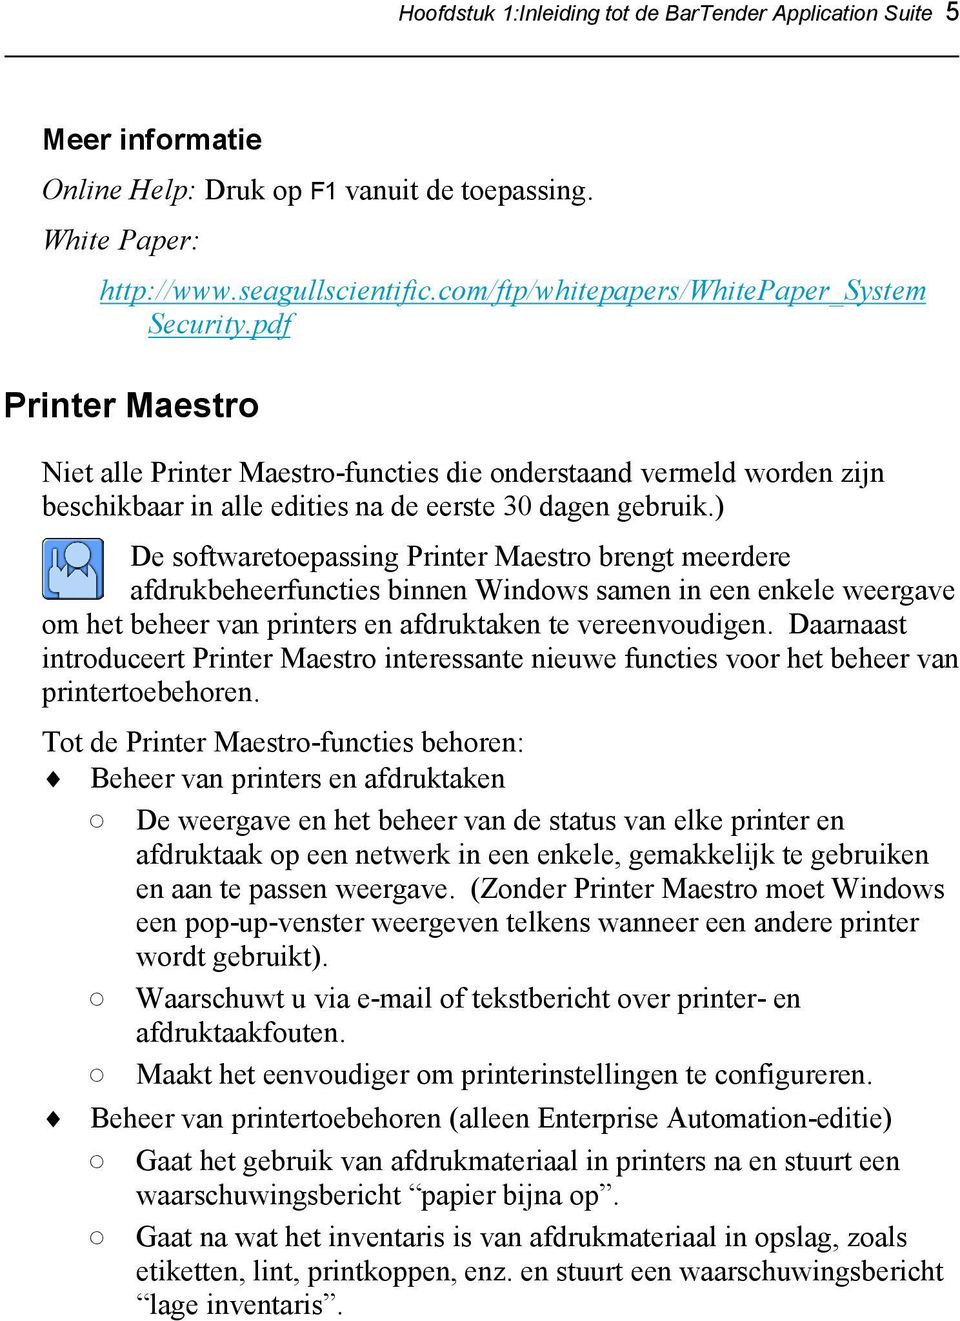 ) De softwaretoepassing Printer Maestro brengt meerdere afdrukbeheerfuncties binnen Windows samen in een enkele weergave om het beheer van printers en afdruktaken te vereenvoudigen.